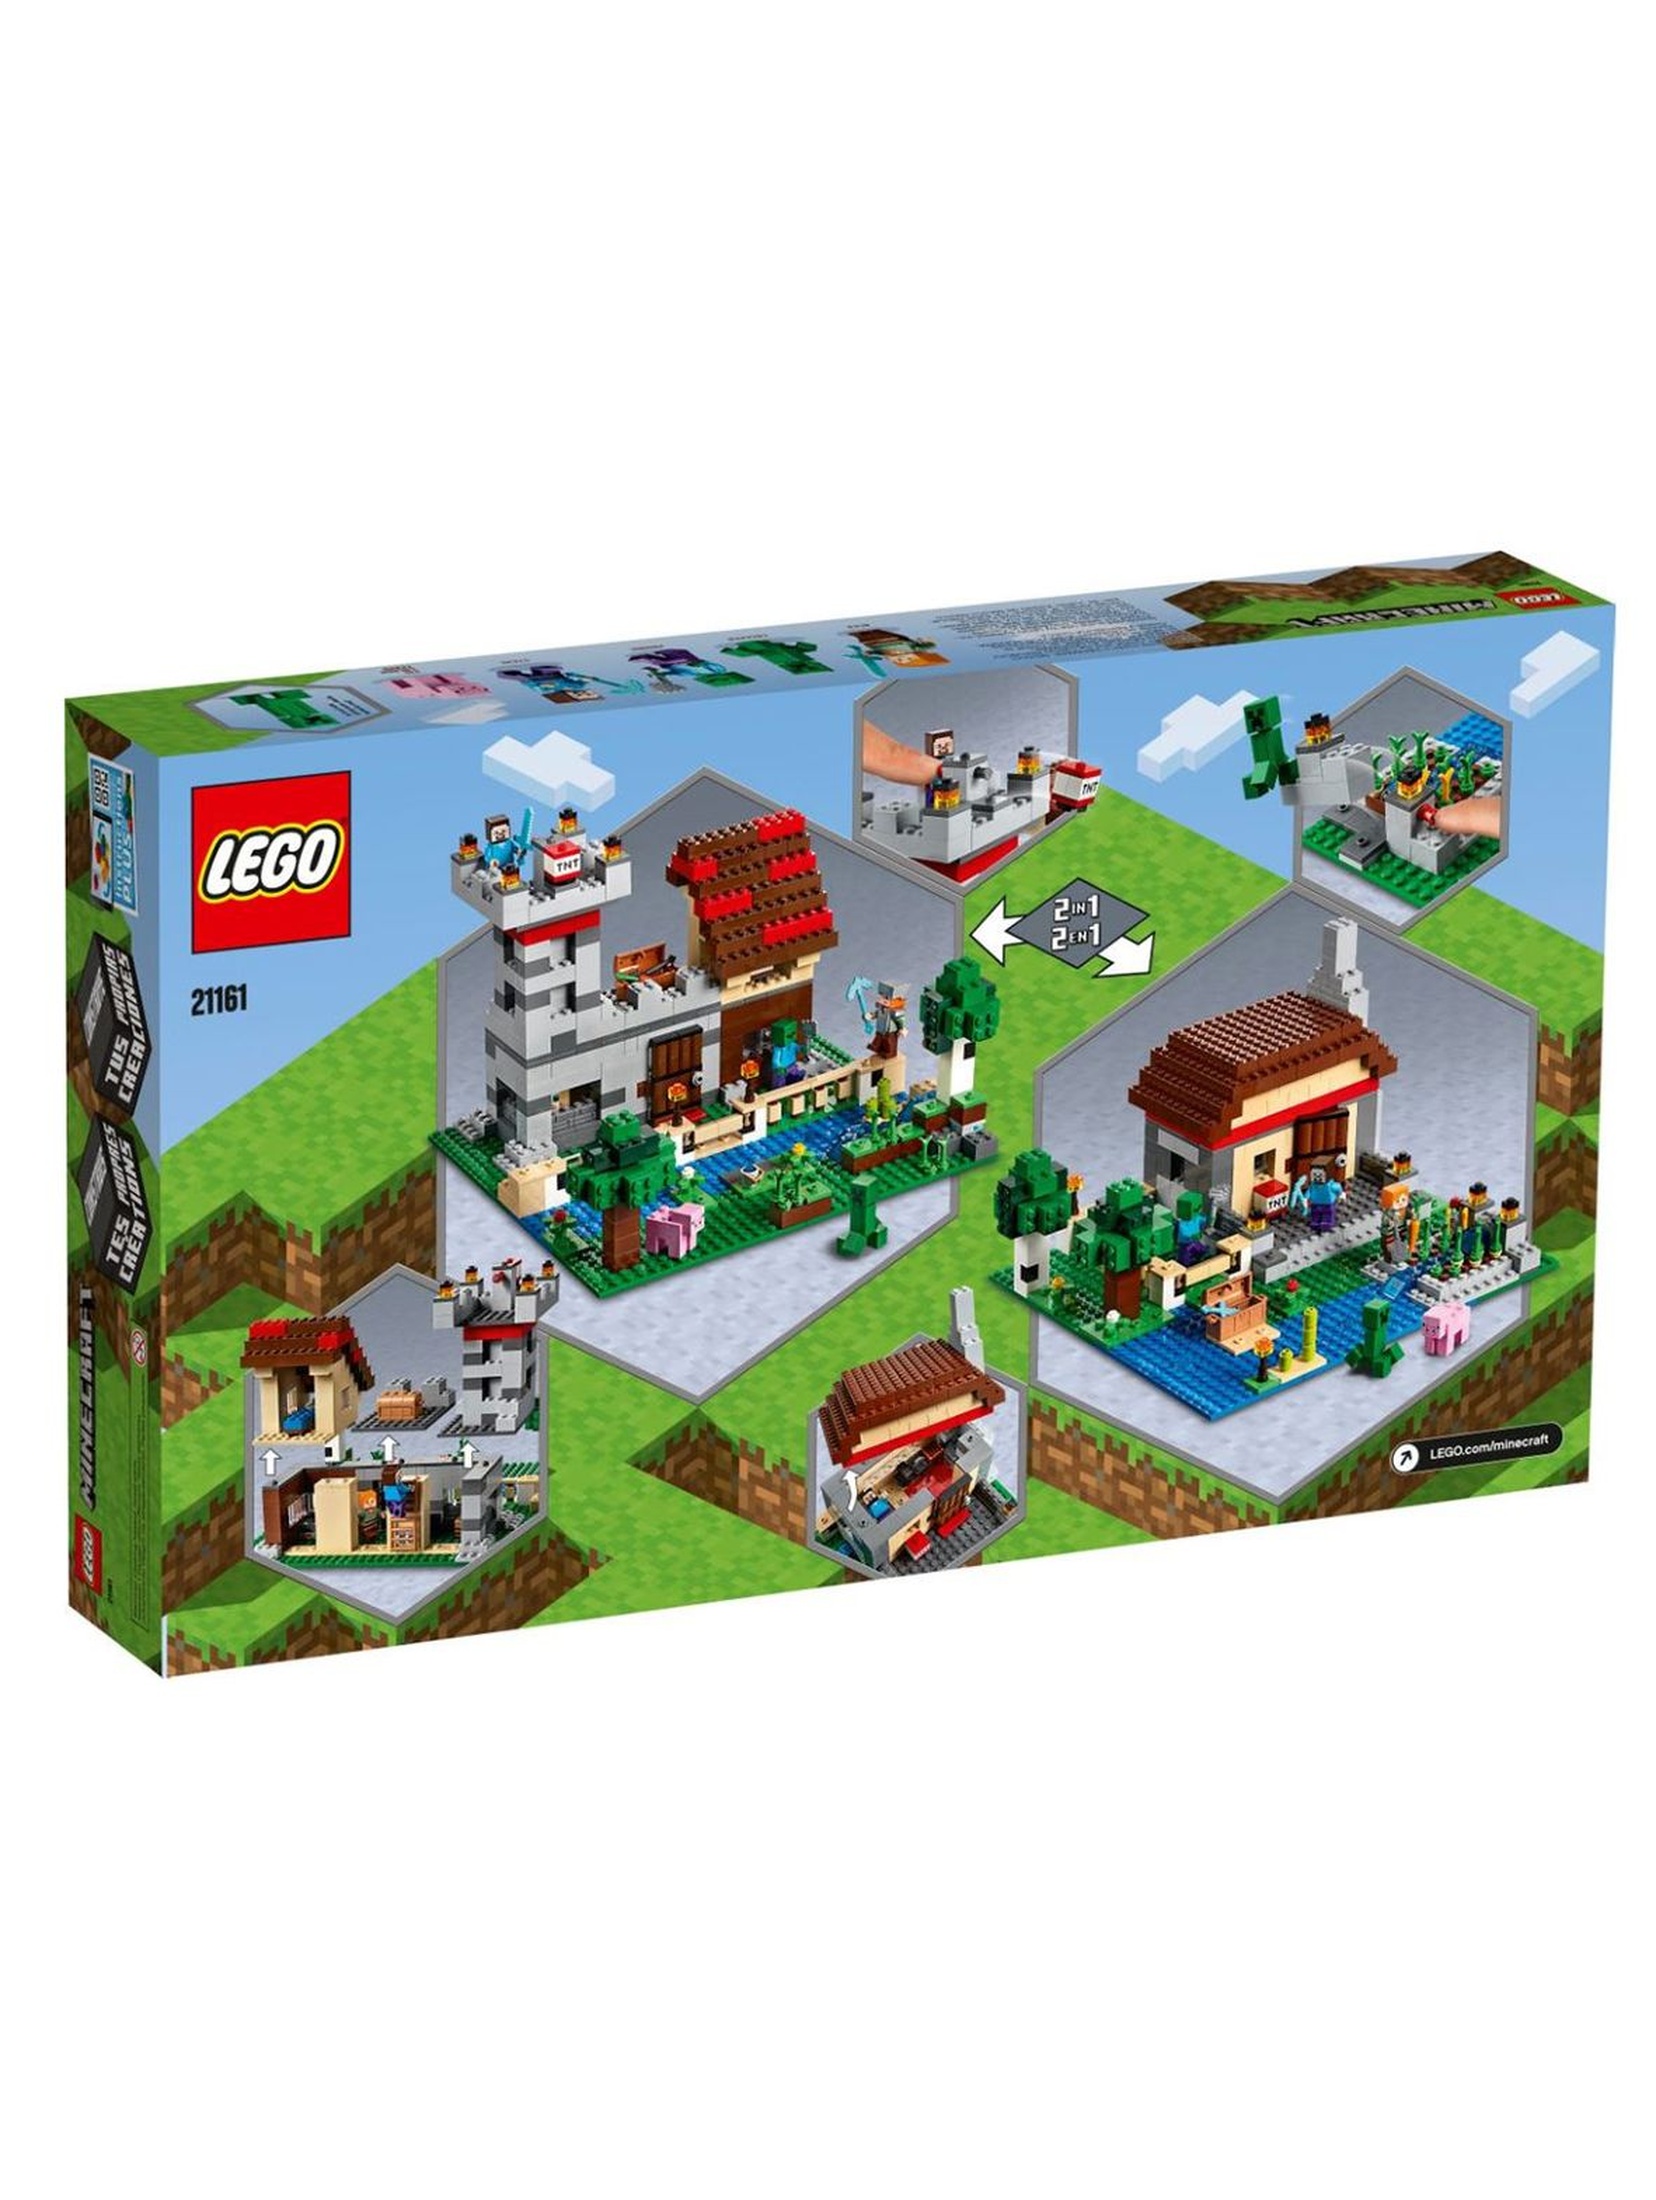 Lego  Minecraft - Kreatywny warsztat -  564 elementy wiek 8+